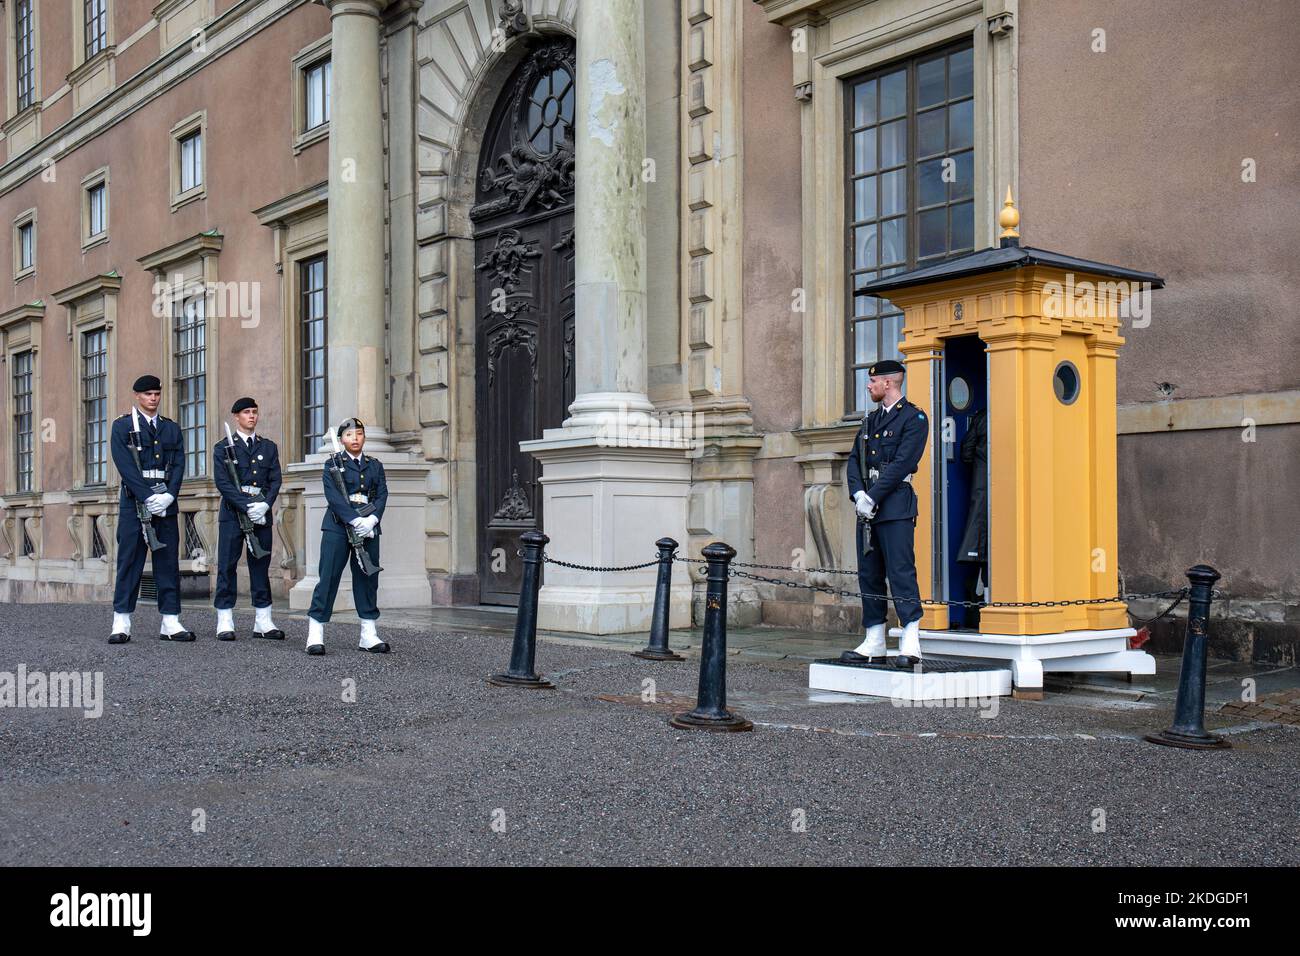 Kungliga Slottet oder Wachen des Königlichen Palastes in Stockholm, Schweden Stockfoto